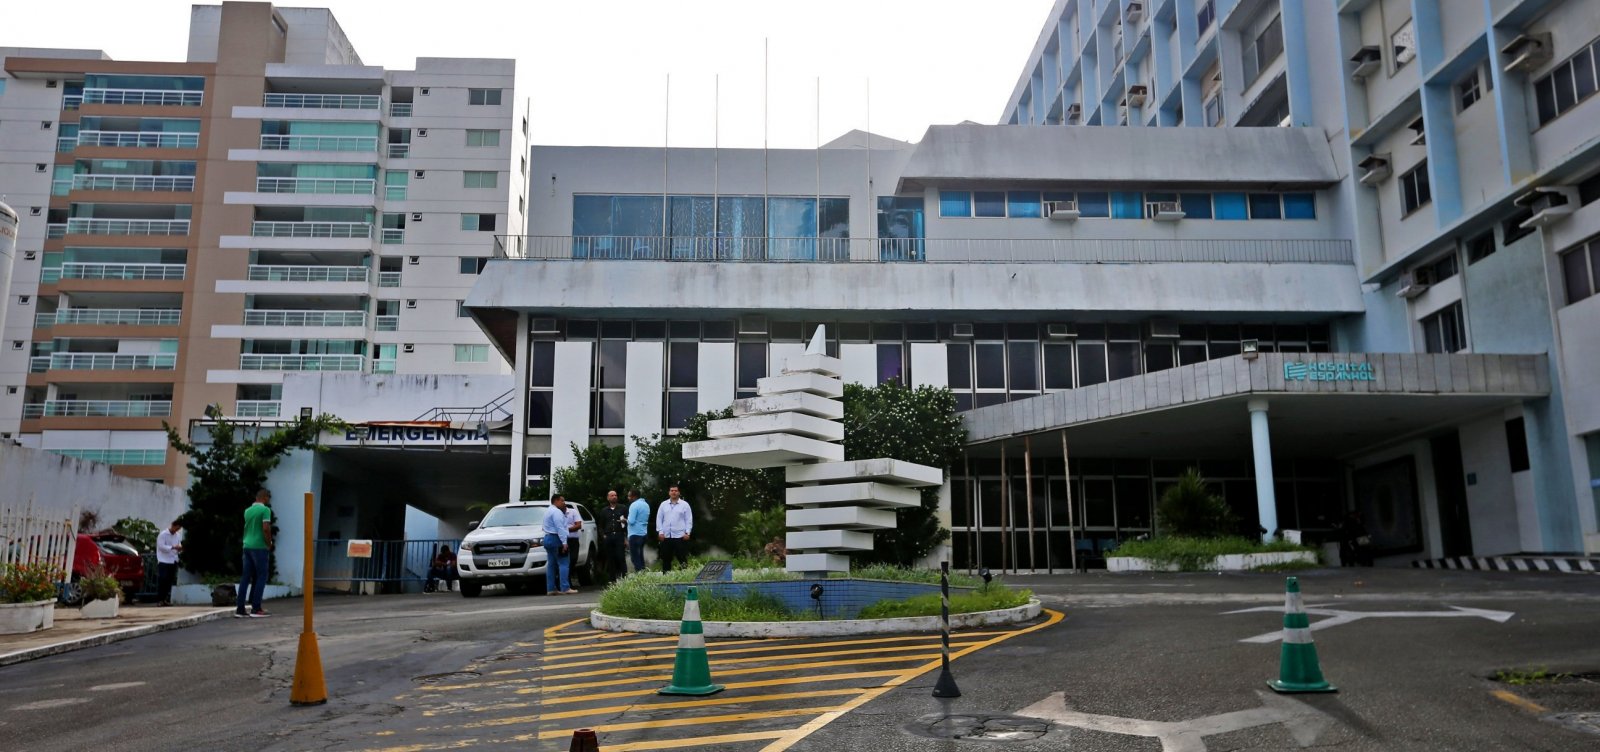 Hospital Espanhol começa a receber pacientes a partir da próxima semana, diz Rui